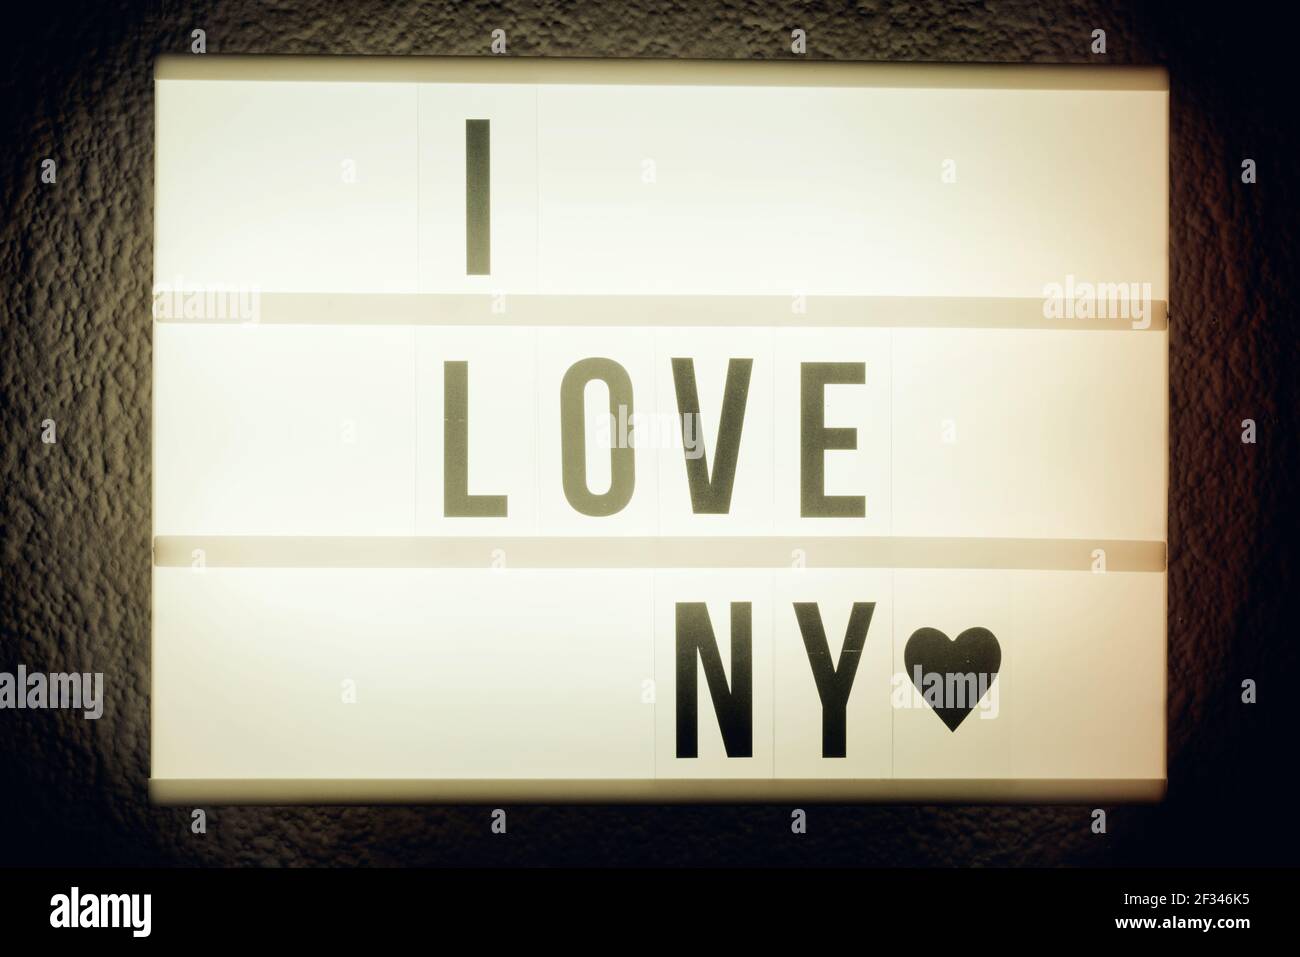 An I Love New York illuminated sign Stock Photo